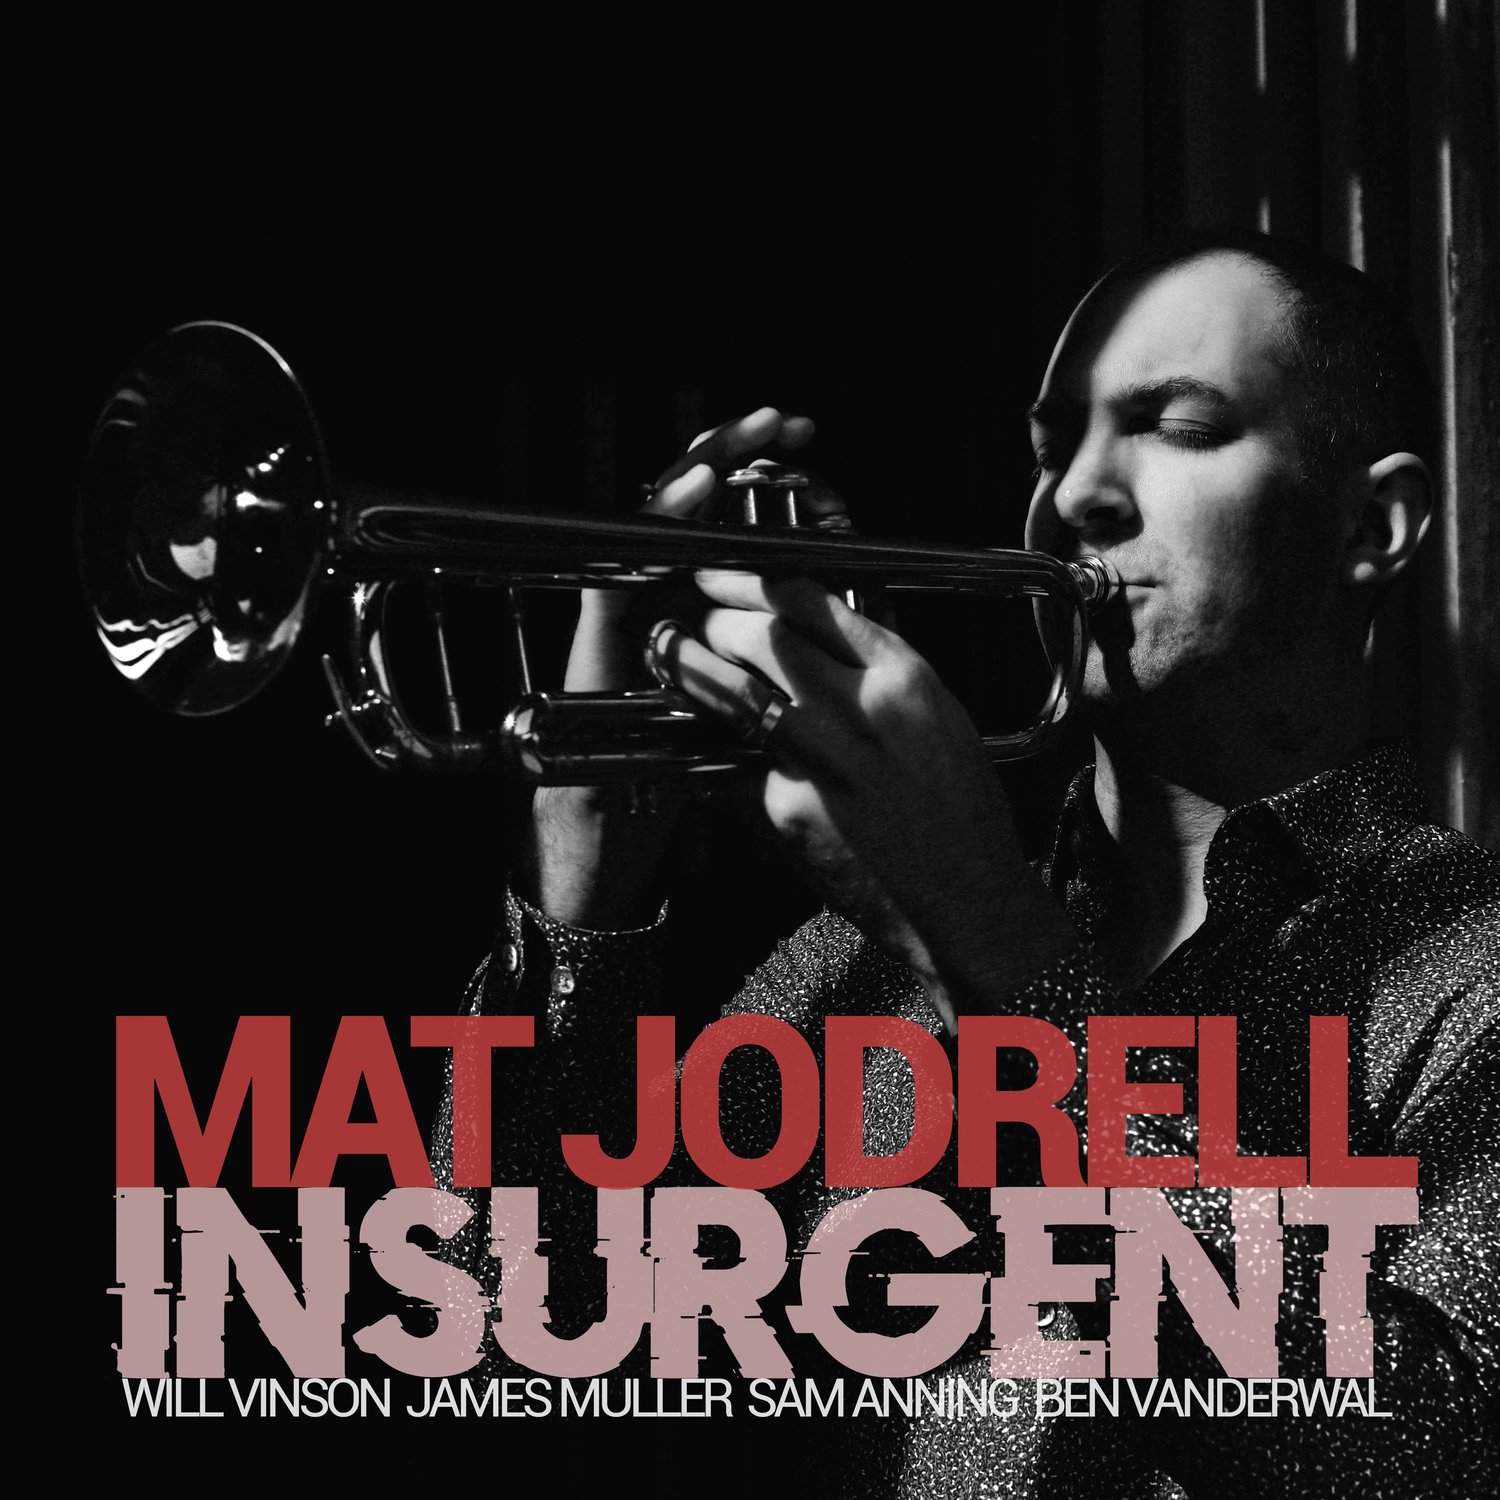 Mat Jodrell - "Insurgent" [Recorded (JP)]